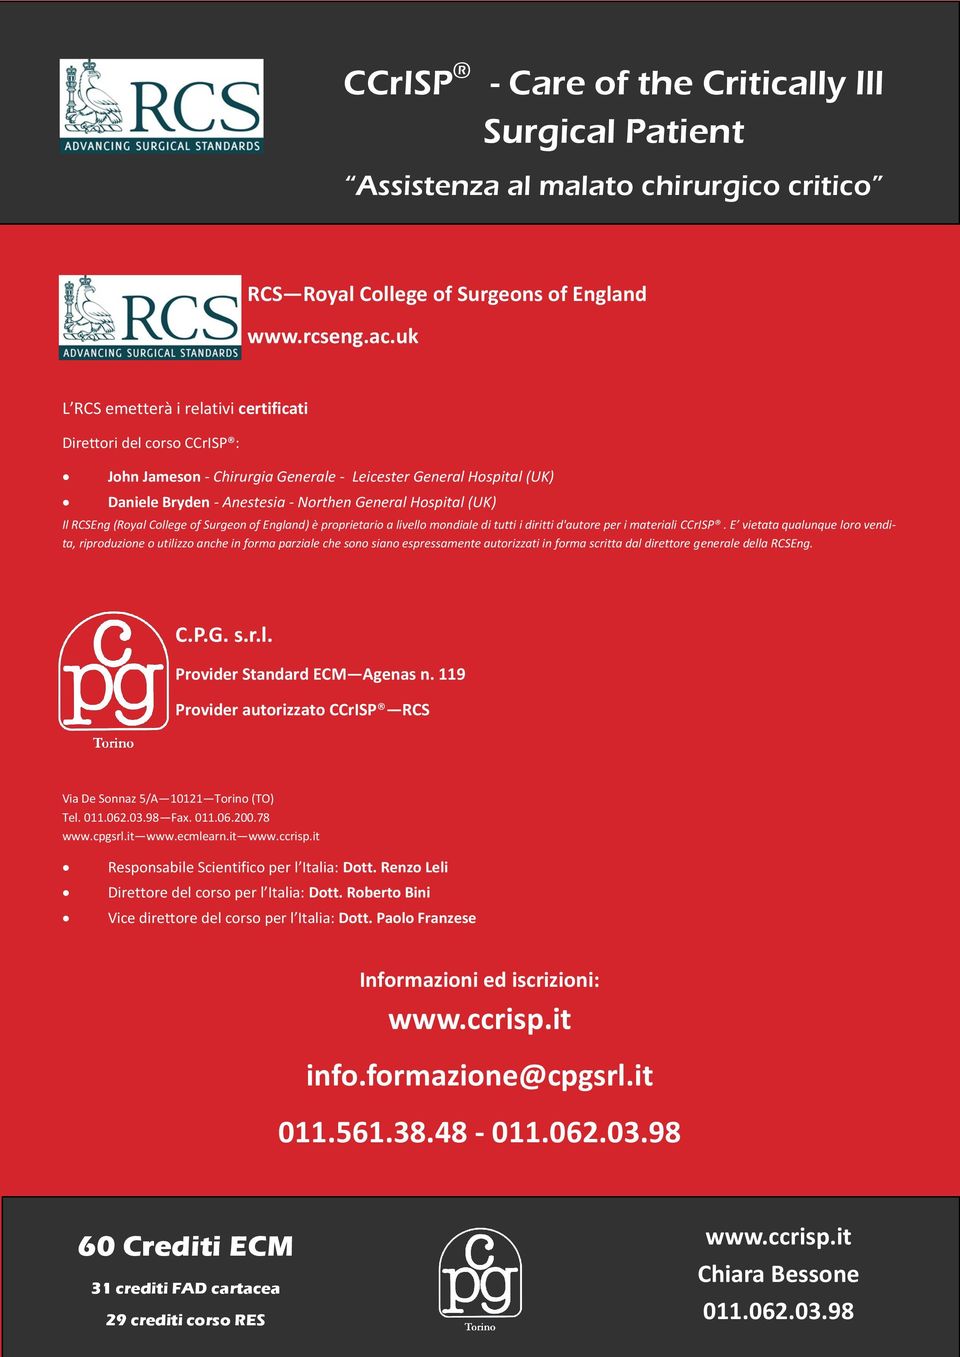 RCSEng (Royal College of Surgeon of England) è proprietario a livello mondiale di tutti i diritti d'autore per i materiali CCrISP.